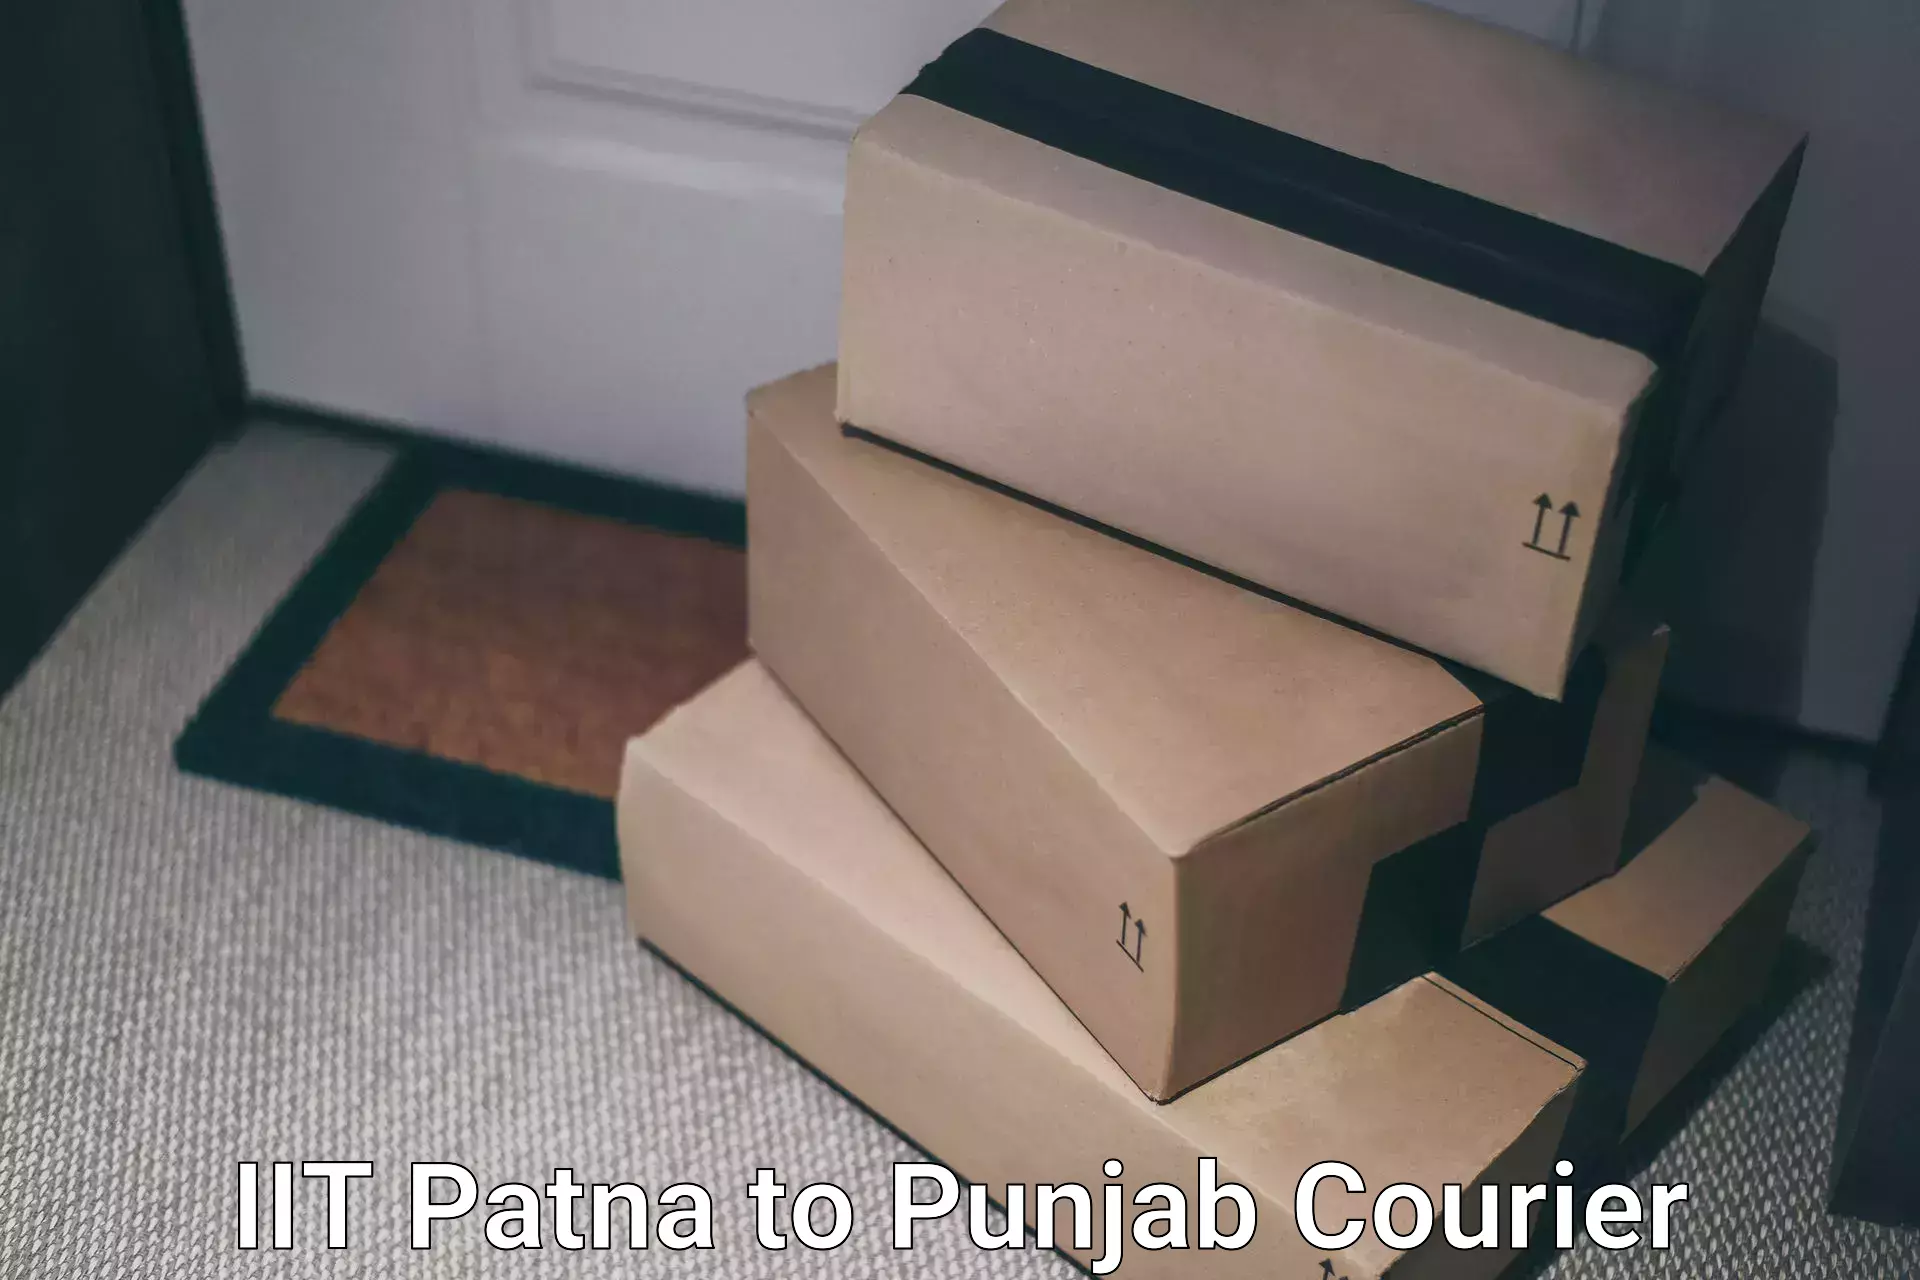 Ground shipping IIT Patna to Punjab